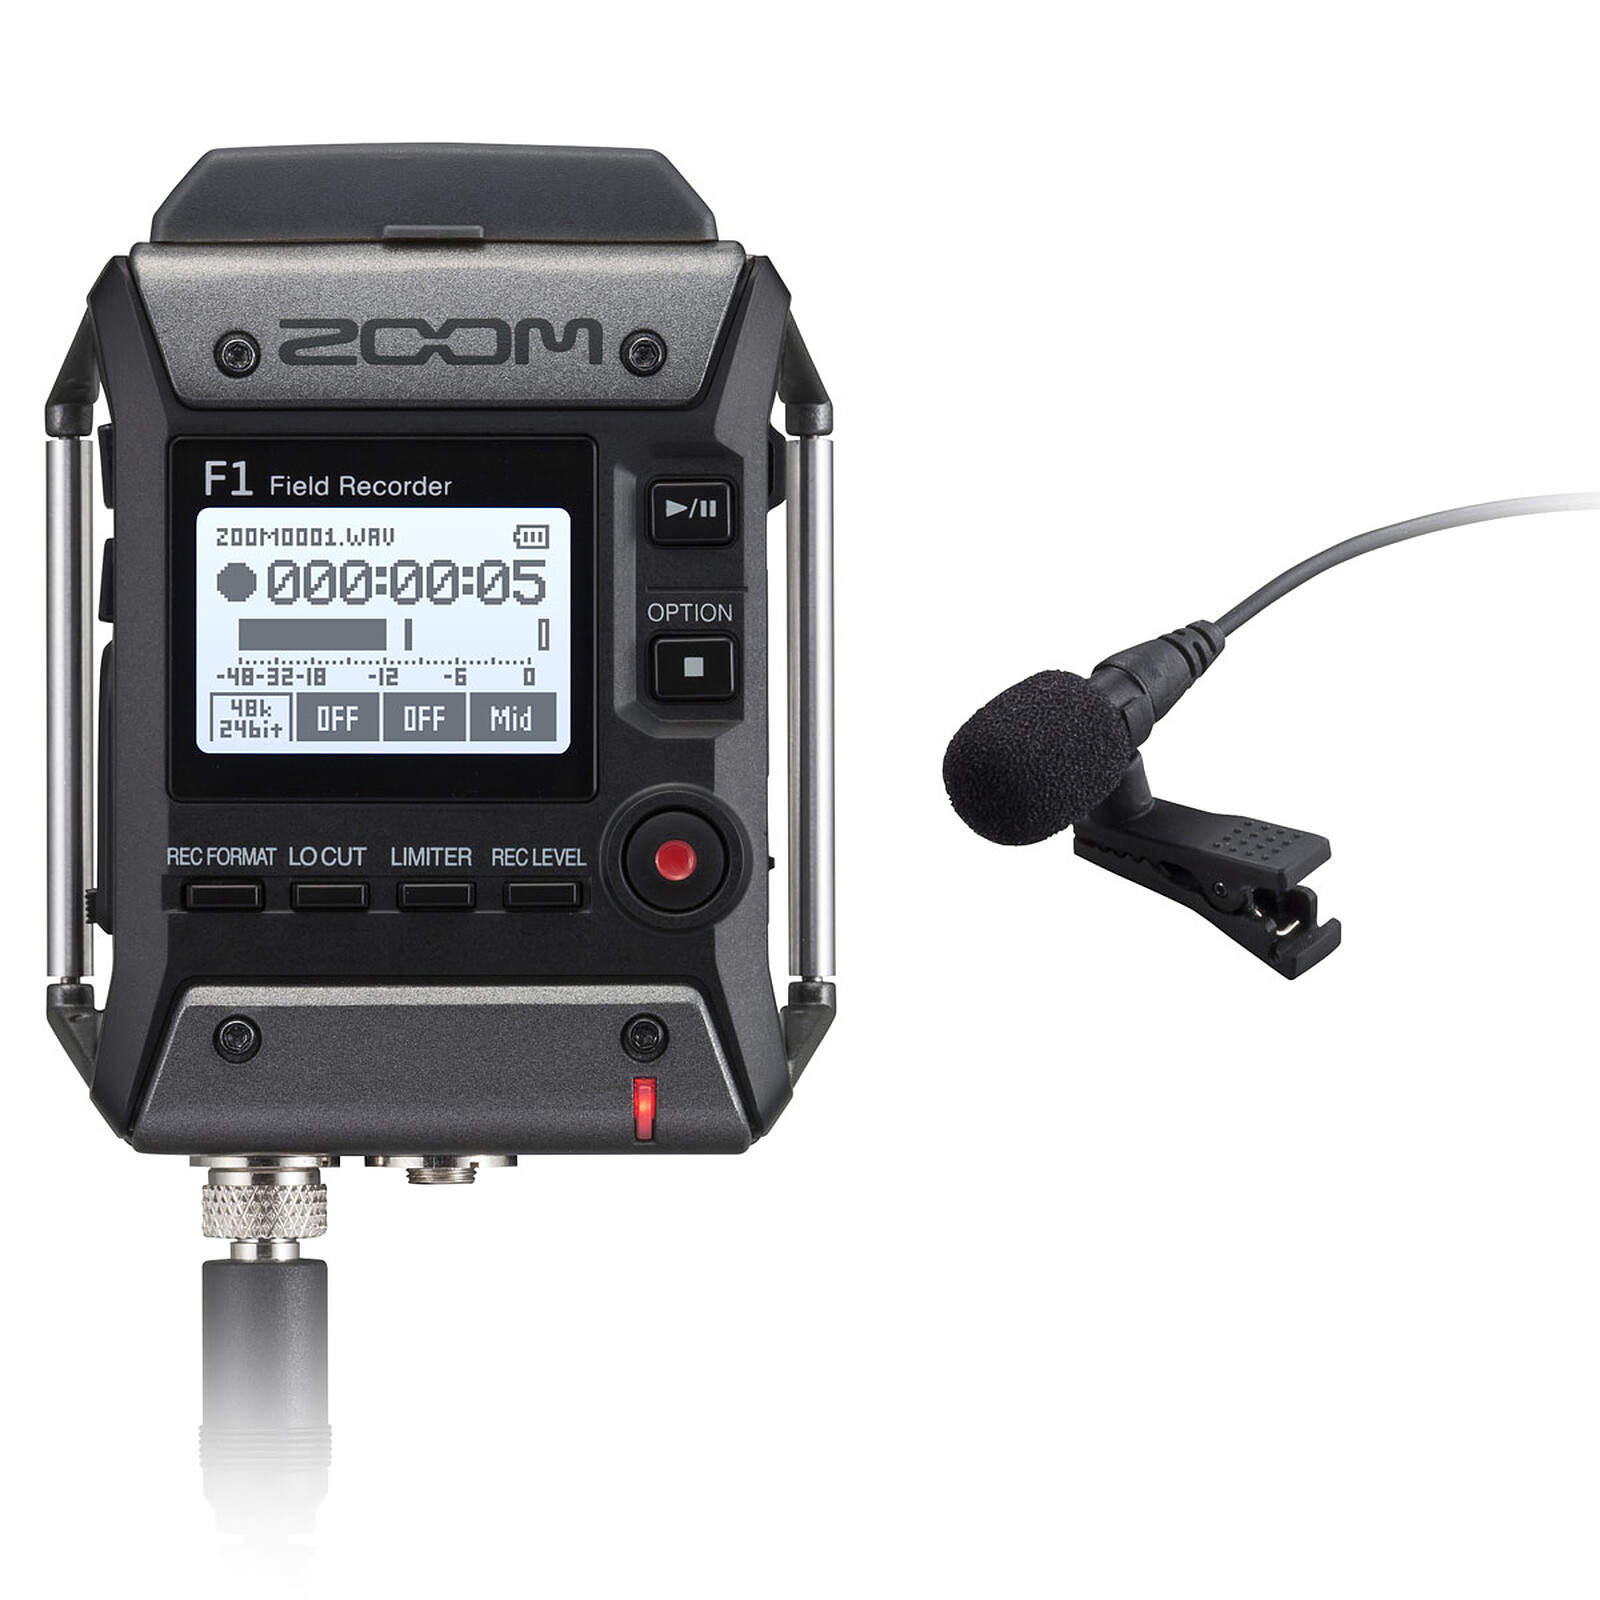 Zoom F2 BT Noir - Dictaphone - Garantie 3 ans LDLC